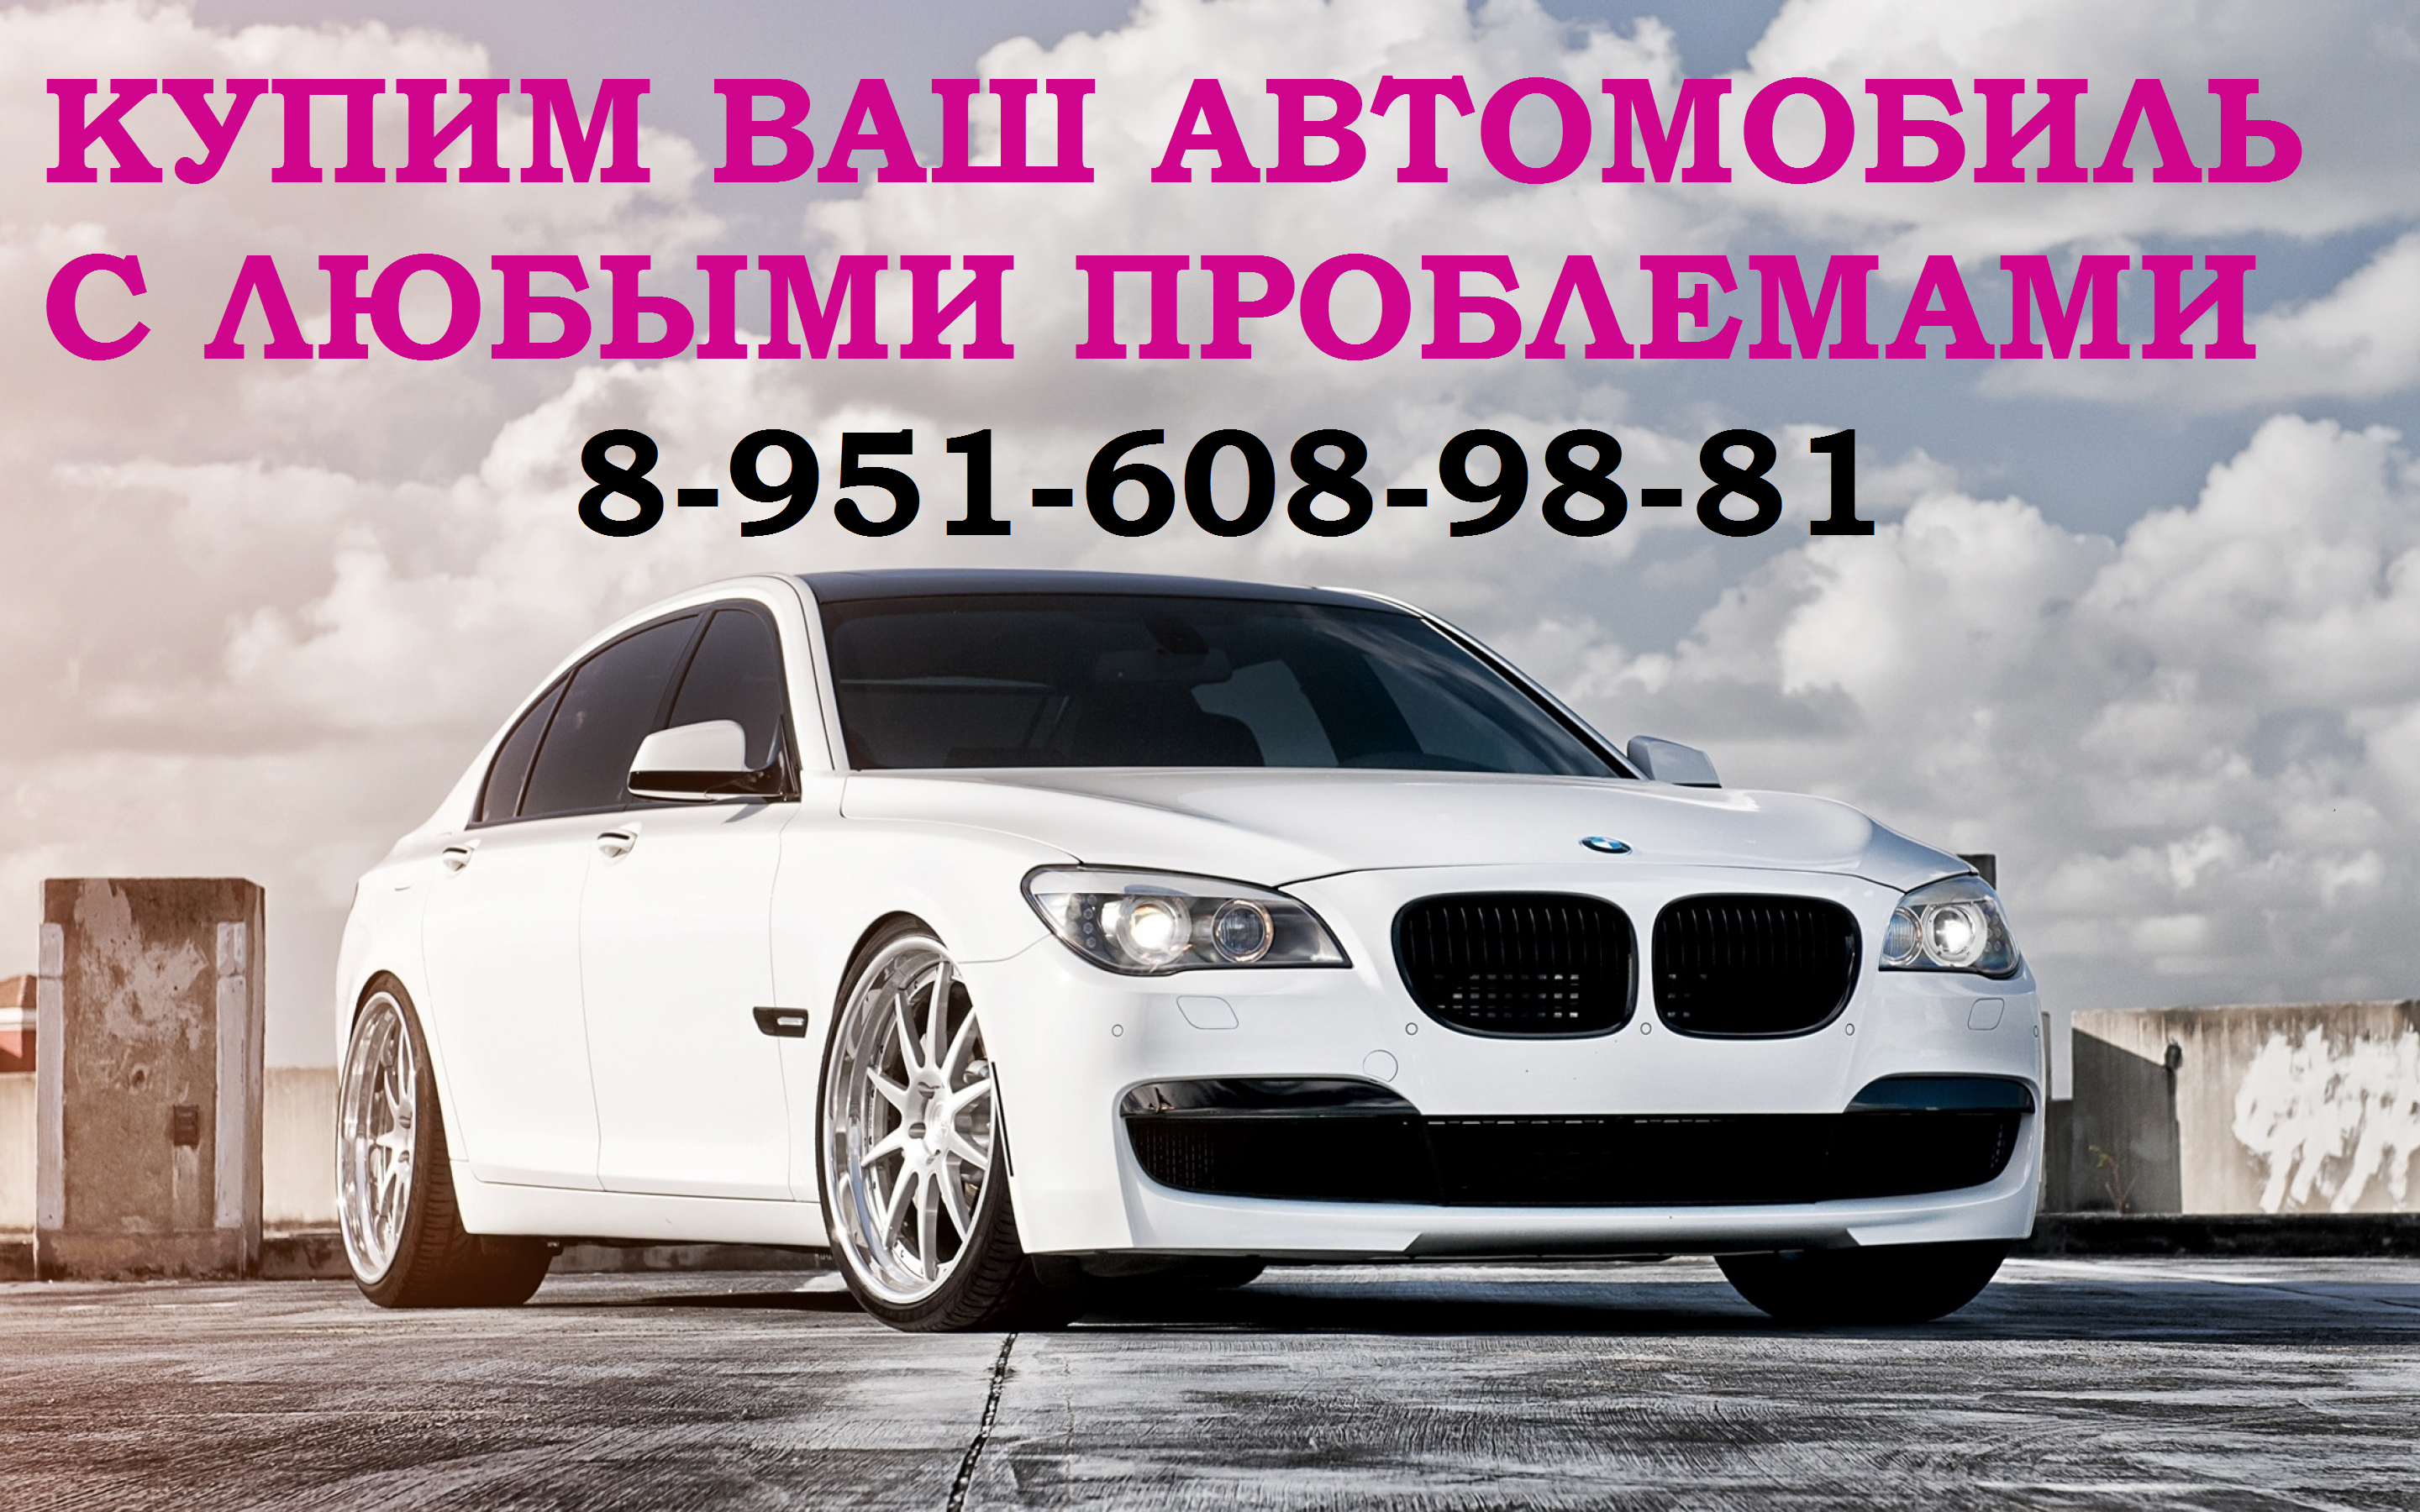 Купим любой автомобиль, с любыми проблемами 89516089881 Район Промышленновский